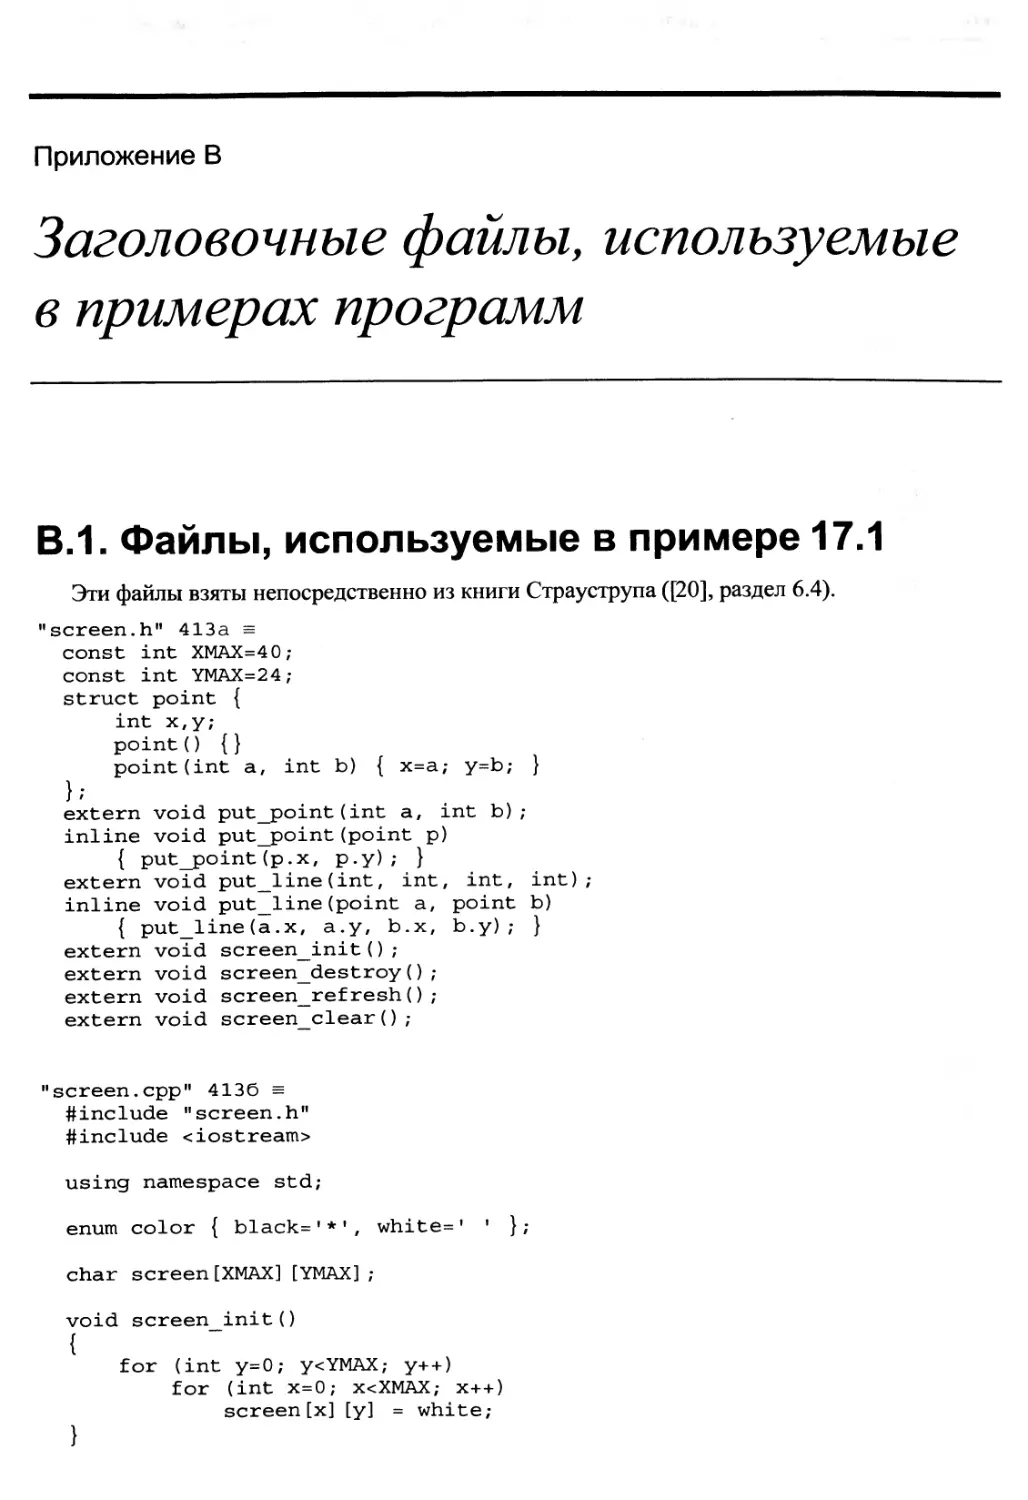 Приложение В. Заголовочные файлы, используемые в примерах программ